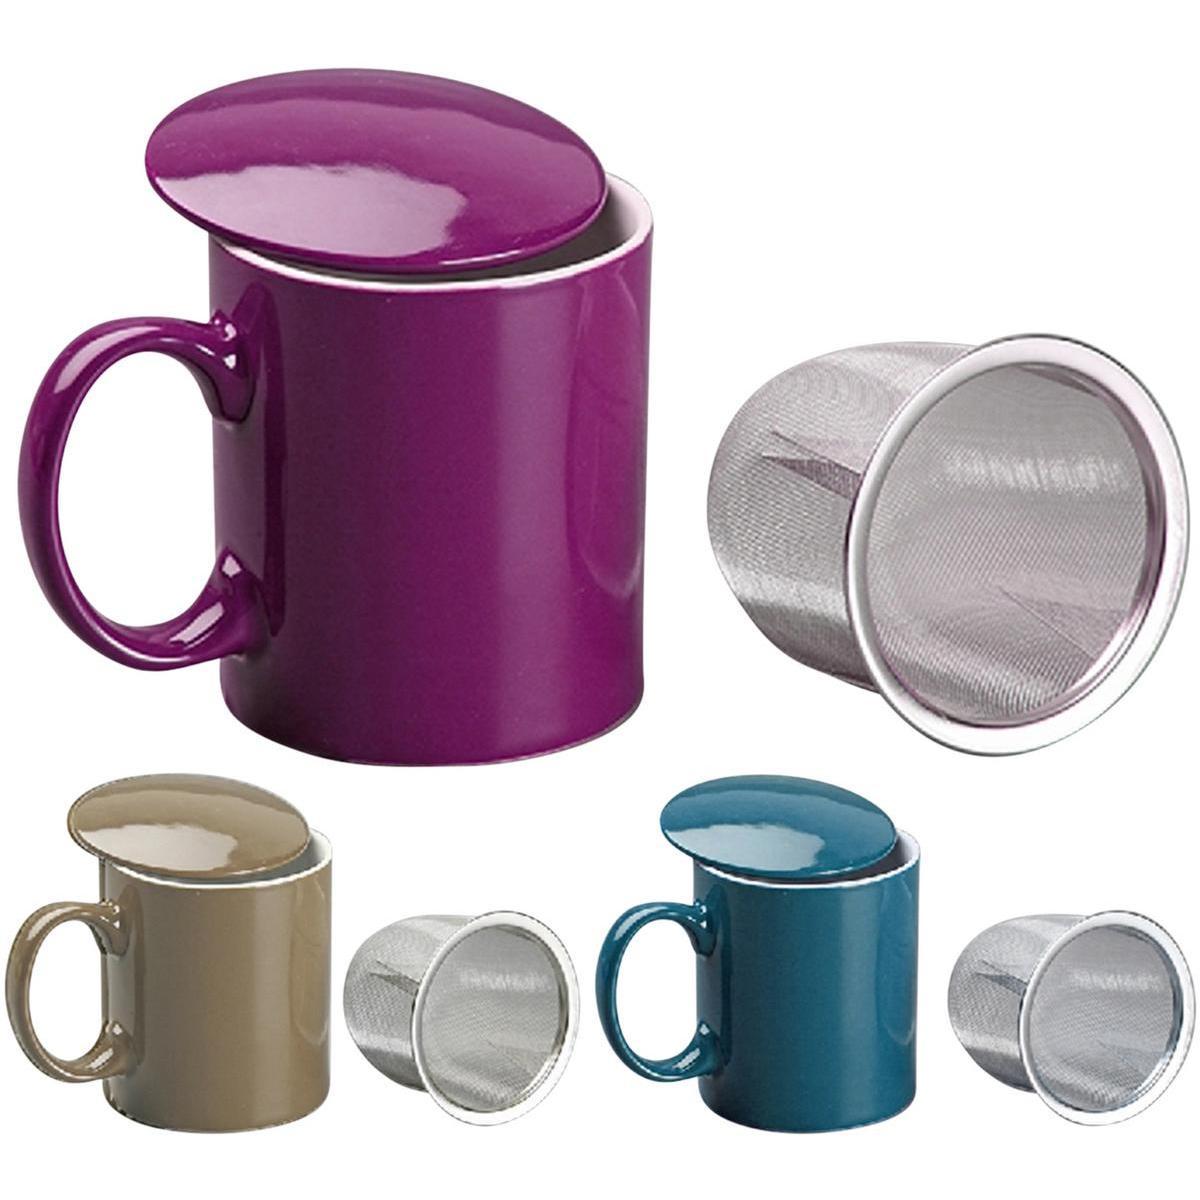 Mug et infuseur à thé - Grès et acier inoxydable - Ø 8,5 x H 9,6 cm - Violet, bleu ou taupe